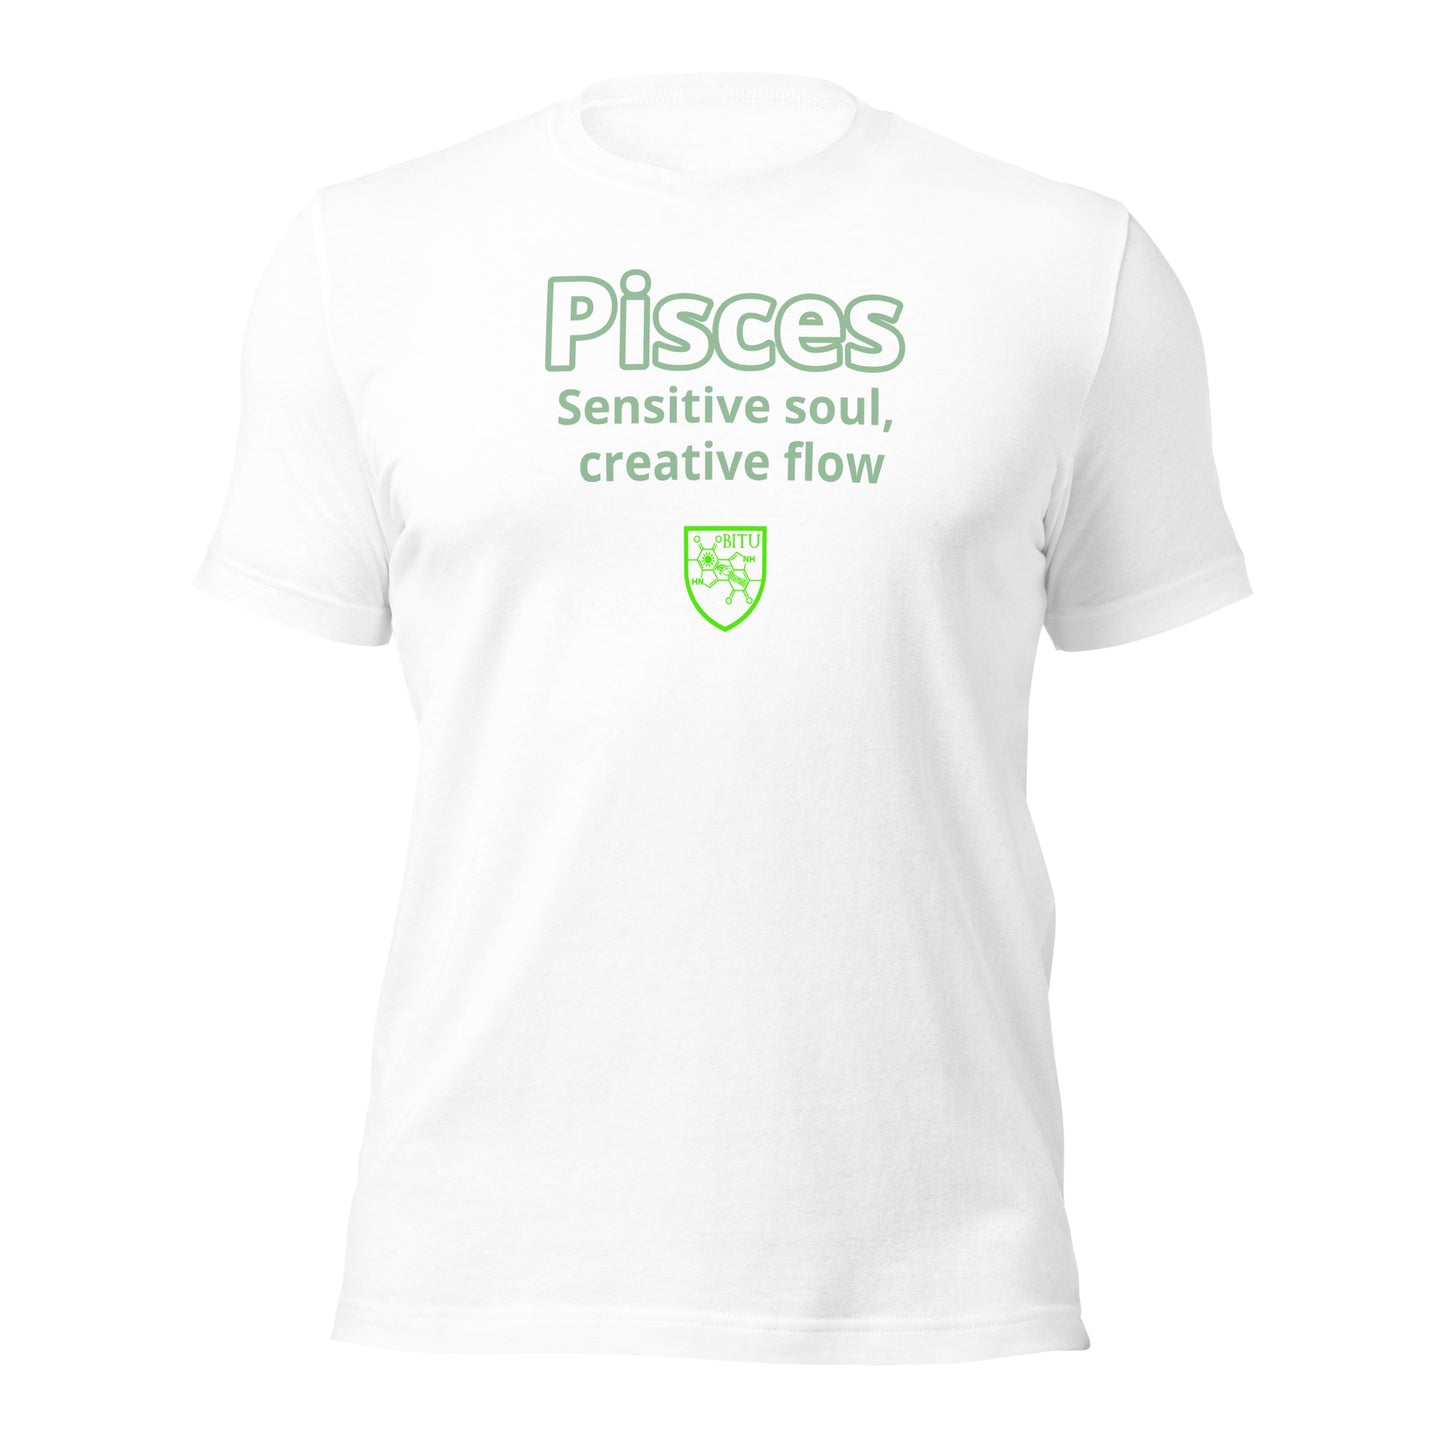 Pisces - Sensitive soul, creative flow